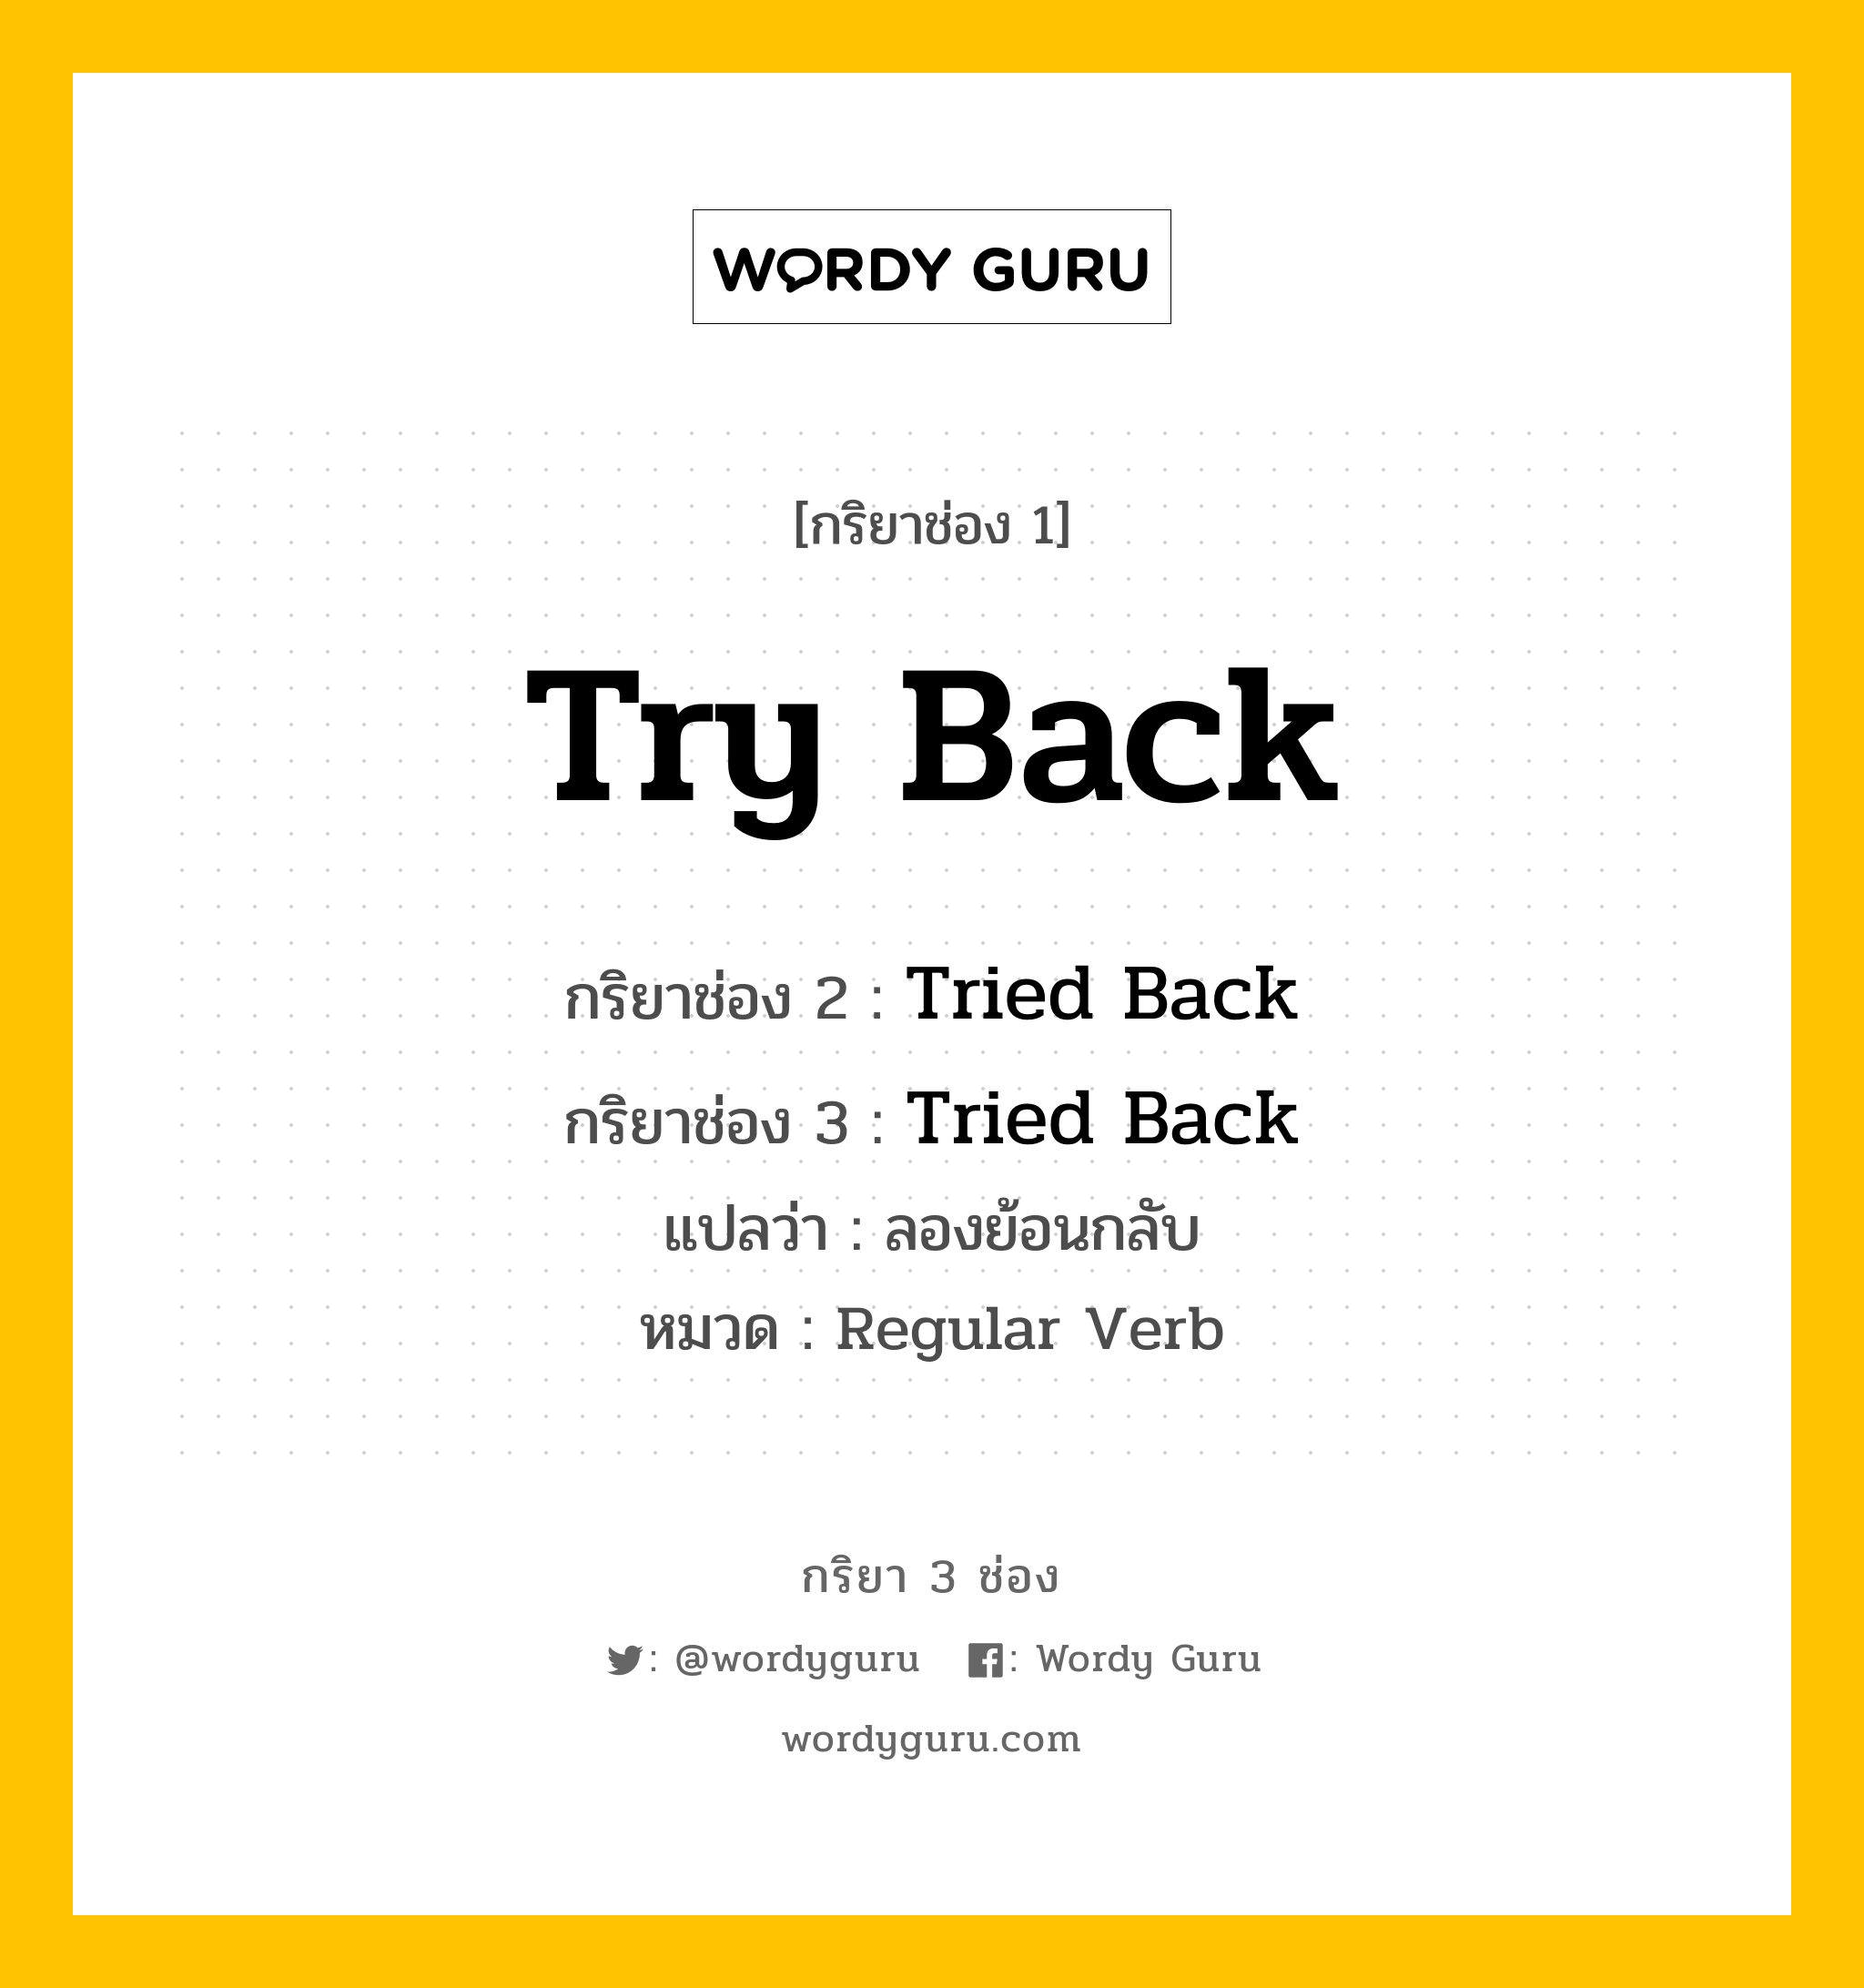 กริยา 3 ช่อง: Try Back ช่อง 2 Try Back ช่อง 3 คืออะไร, กริยาช่อง 1 Try Back กริยาช่อง 2 Tried Back กริยาช่อง 3 Tried Back แปลว่า ลองย้อนกลับ หมวด Regular Verb หมวด Regular Verb